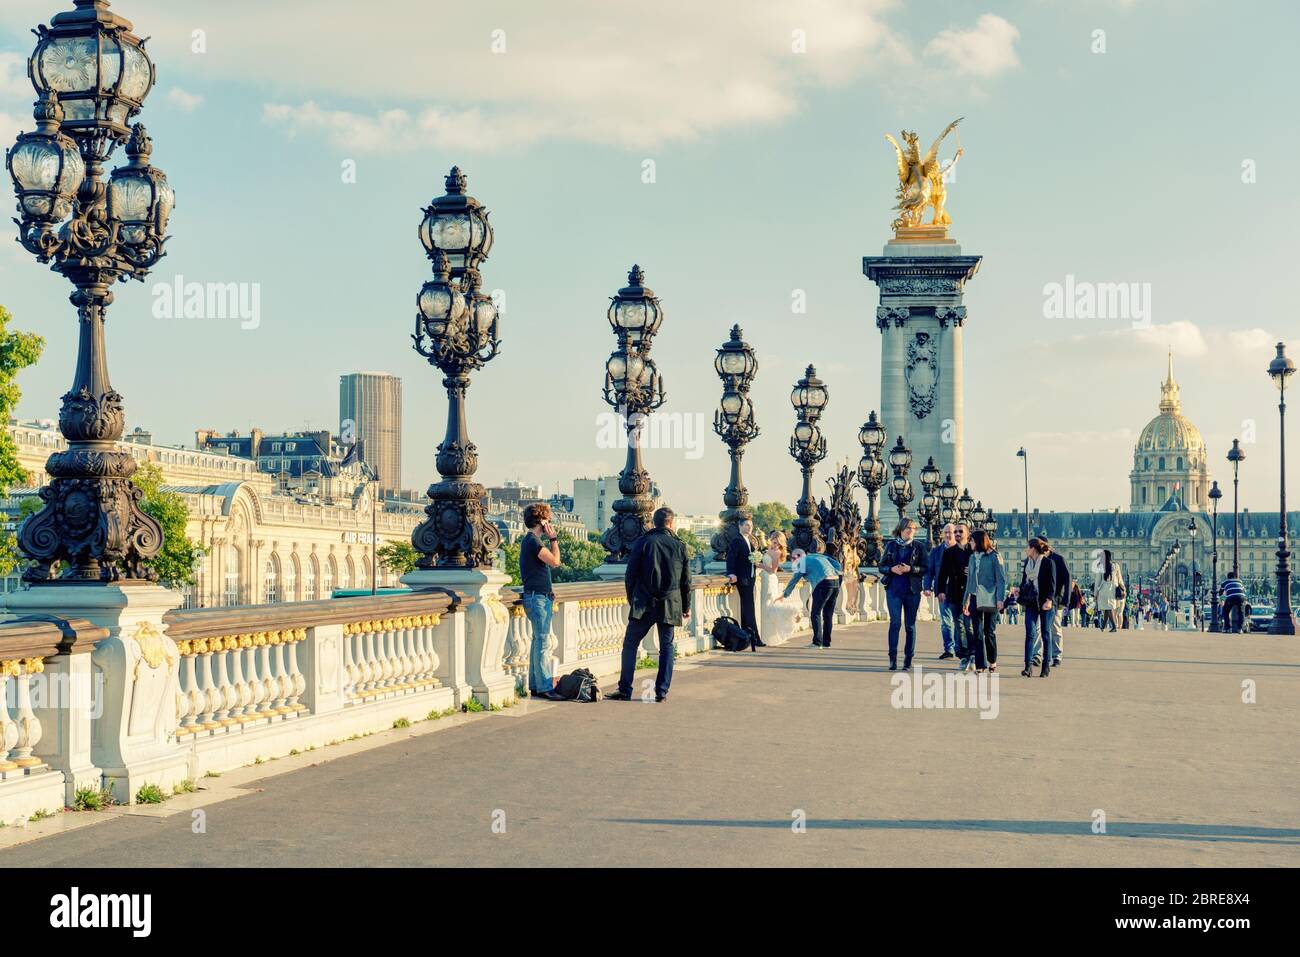 PARIGI - 20 SETTEMBRE 2013: Vista del ponte Alexandre III a Parigi. Alexandre III è una delle principali destinazioni turistiche di Parigi. Foto Stock